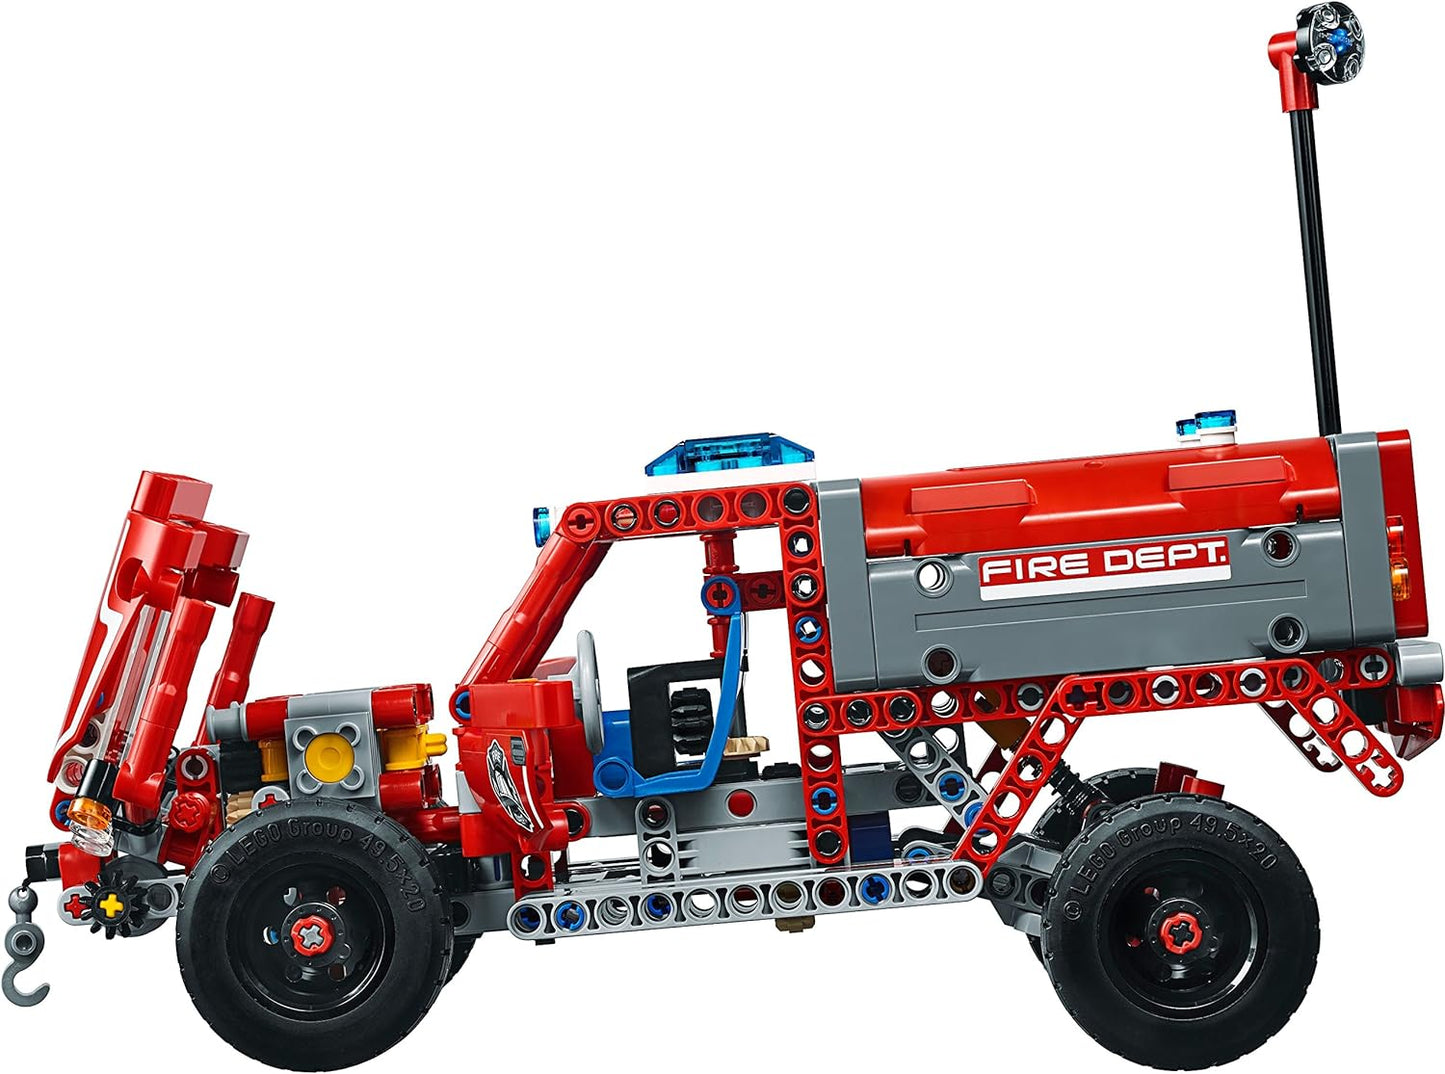 LEGO 42075 Technic First Responder Fire Engine-Fire Truck Construction Set